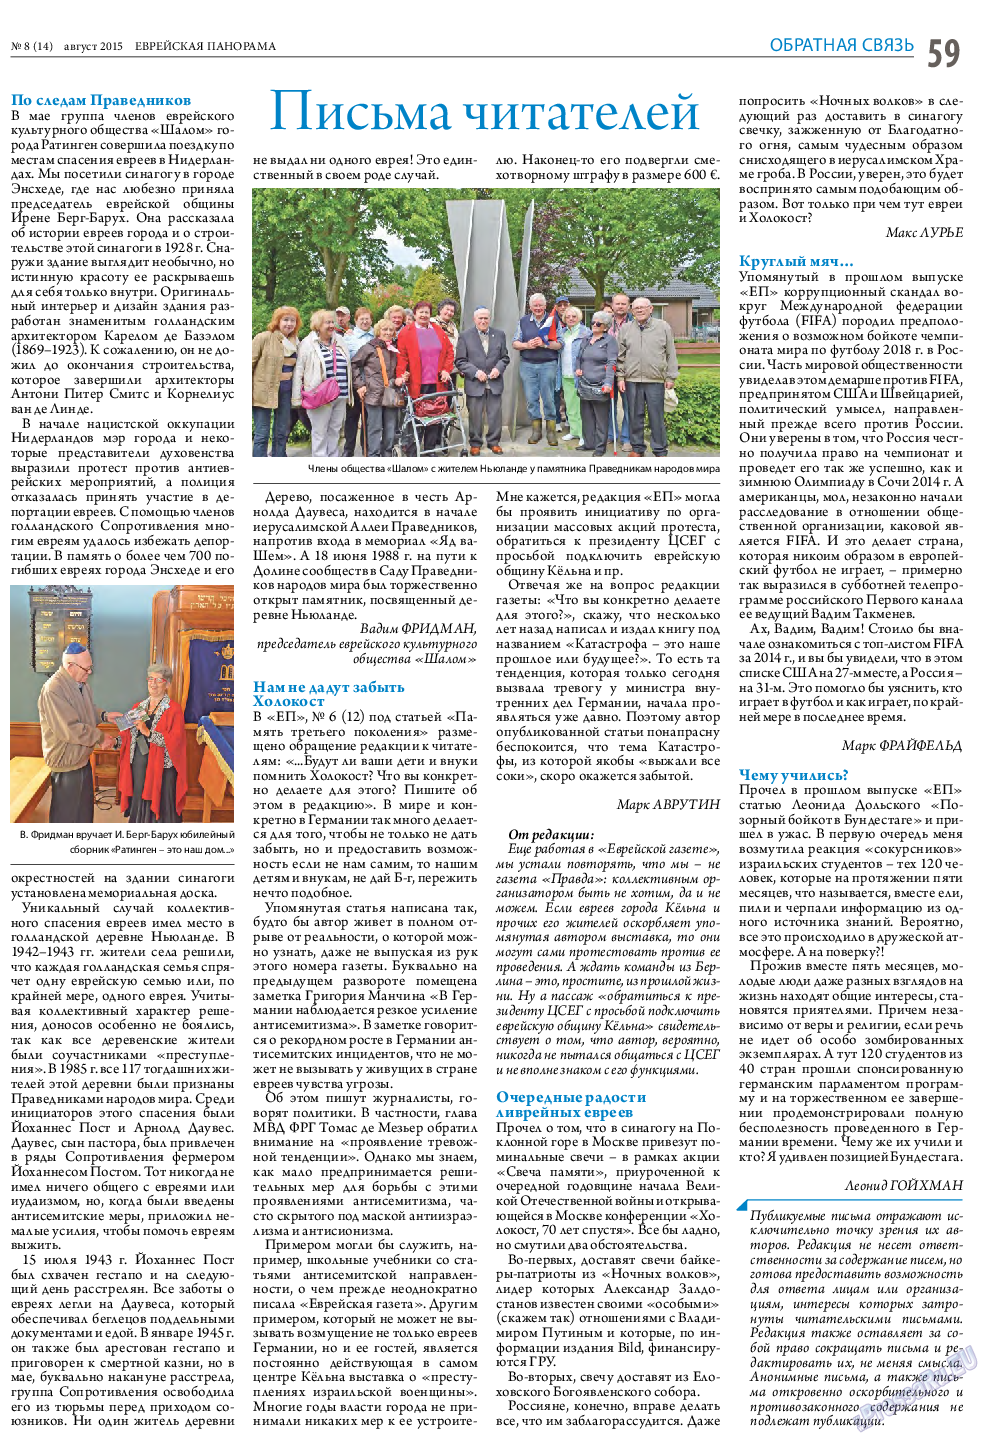 Еврейская панорама (газета). 2015 год, номер 8, стр. 59